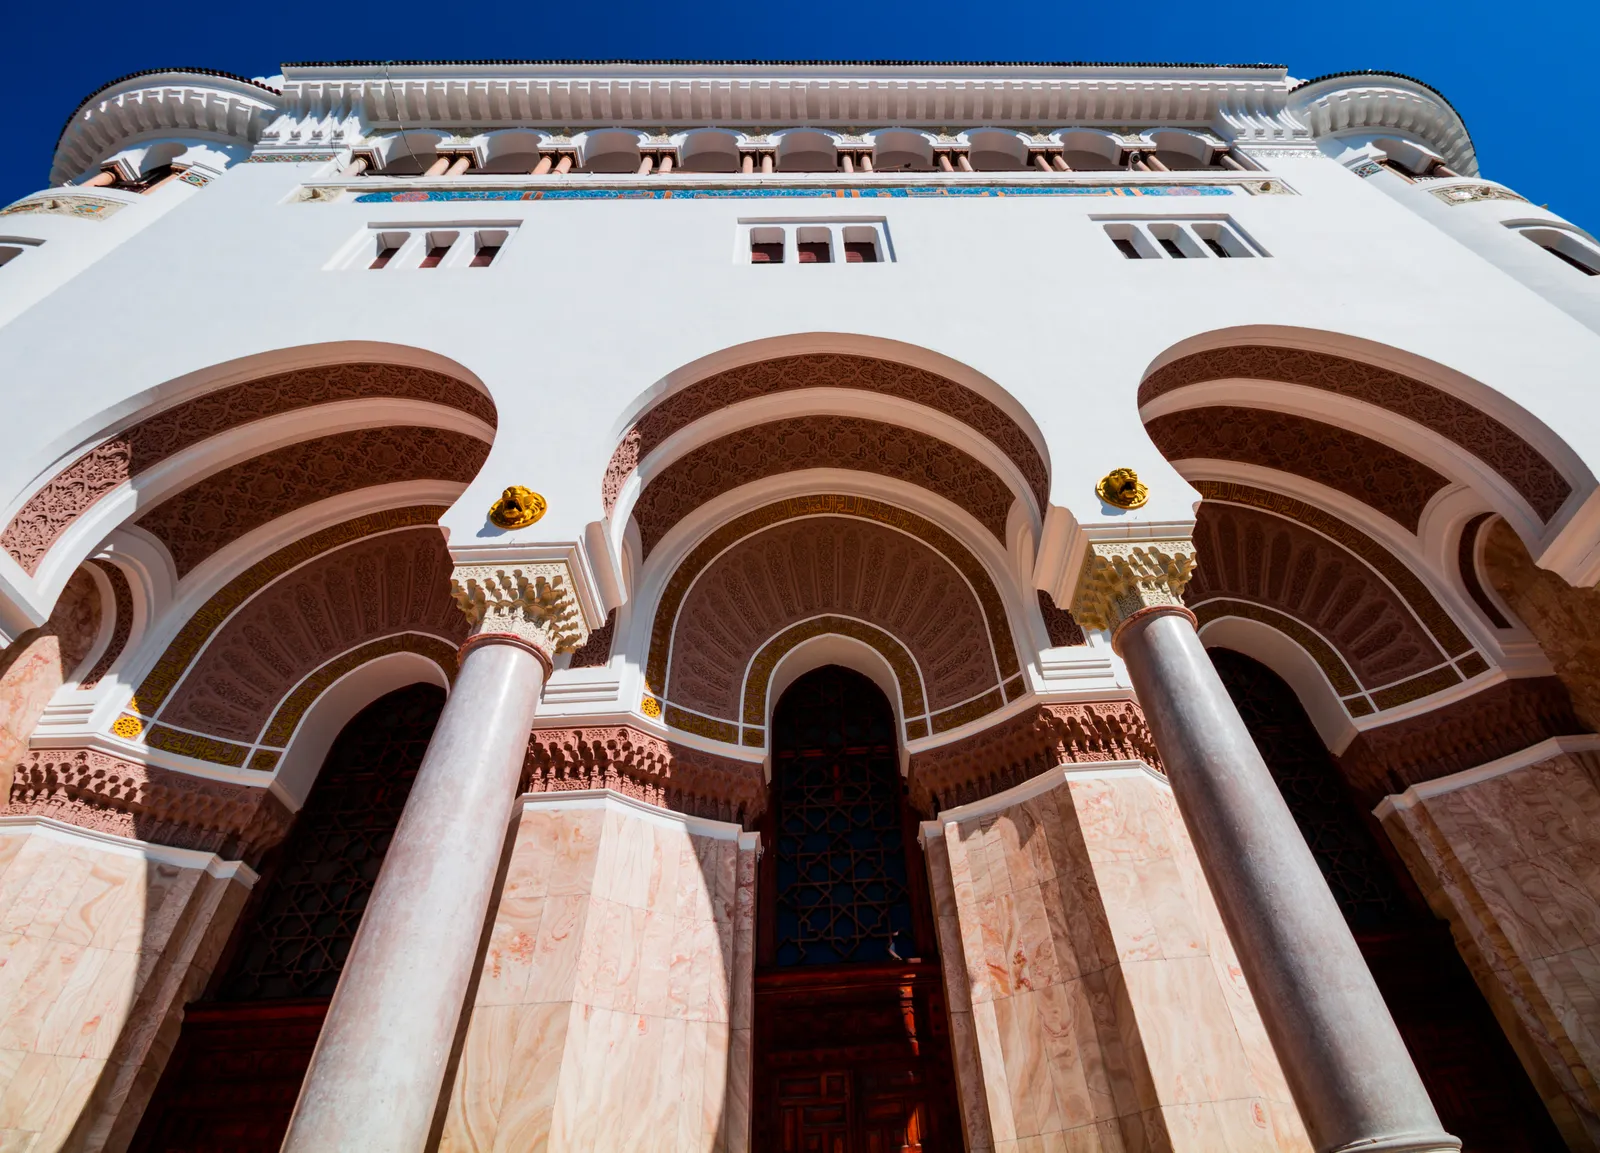 Algiers, Algeria Được thiết kế bởi kiến ​​trúc sư Jules Voinot và Marius Toudoire, Bưu điện Trung tâm Algiers được xây dựng vào năm 1910. Là một ví dụ đáng chú ý về kiến ​​trúc Moorish, tòa nhà đã được chính quyền địa phương chuyển đổi thành bảo tàng về lịch sử bưu chính và viễn thông ở Algeria vào năm 2015 .